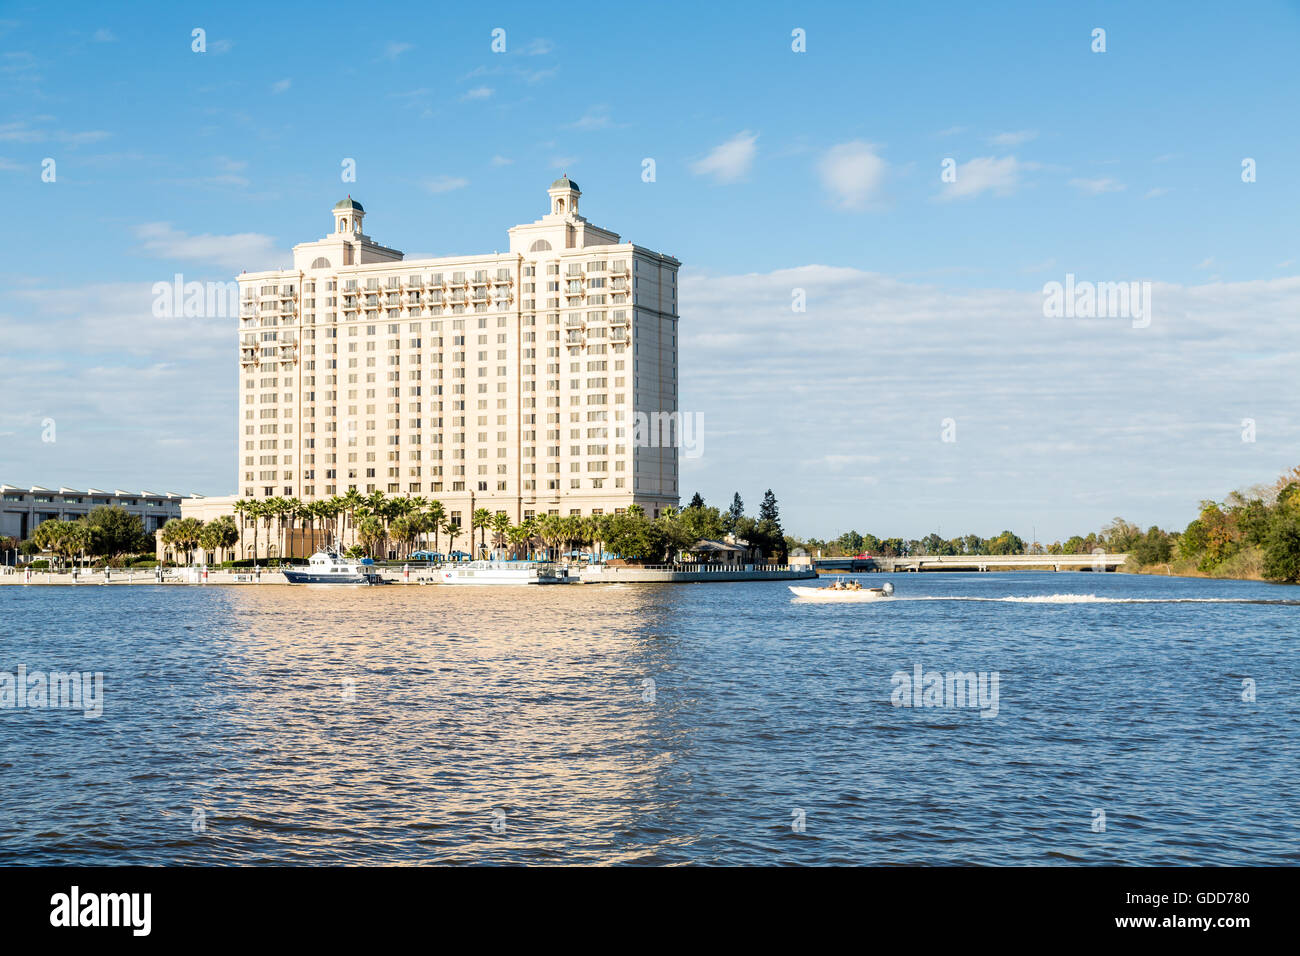 Bunte Fähren in einem Riverfront Hotel am Savannah River angedockt Stockfoto